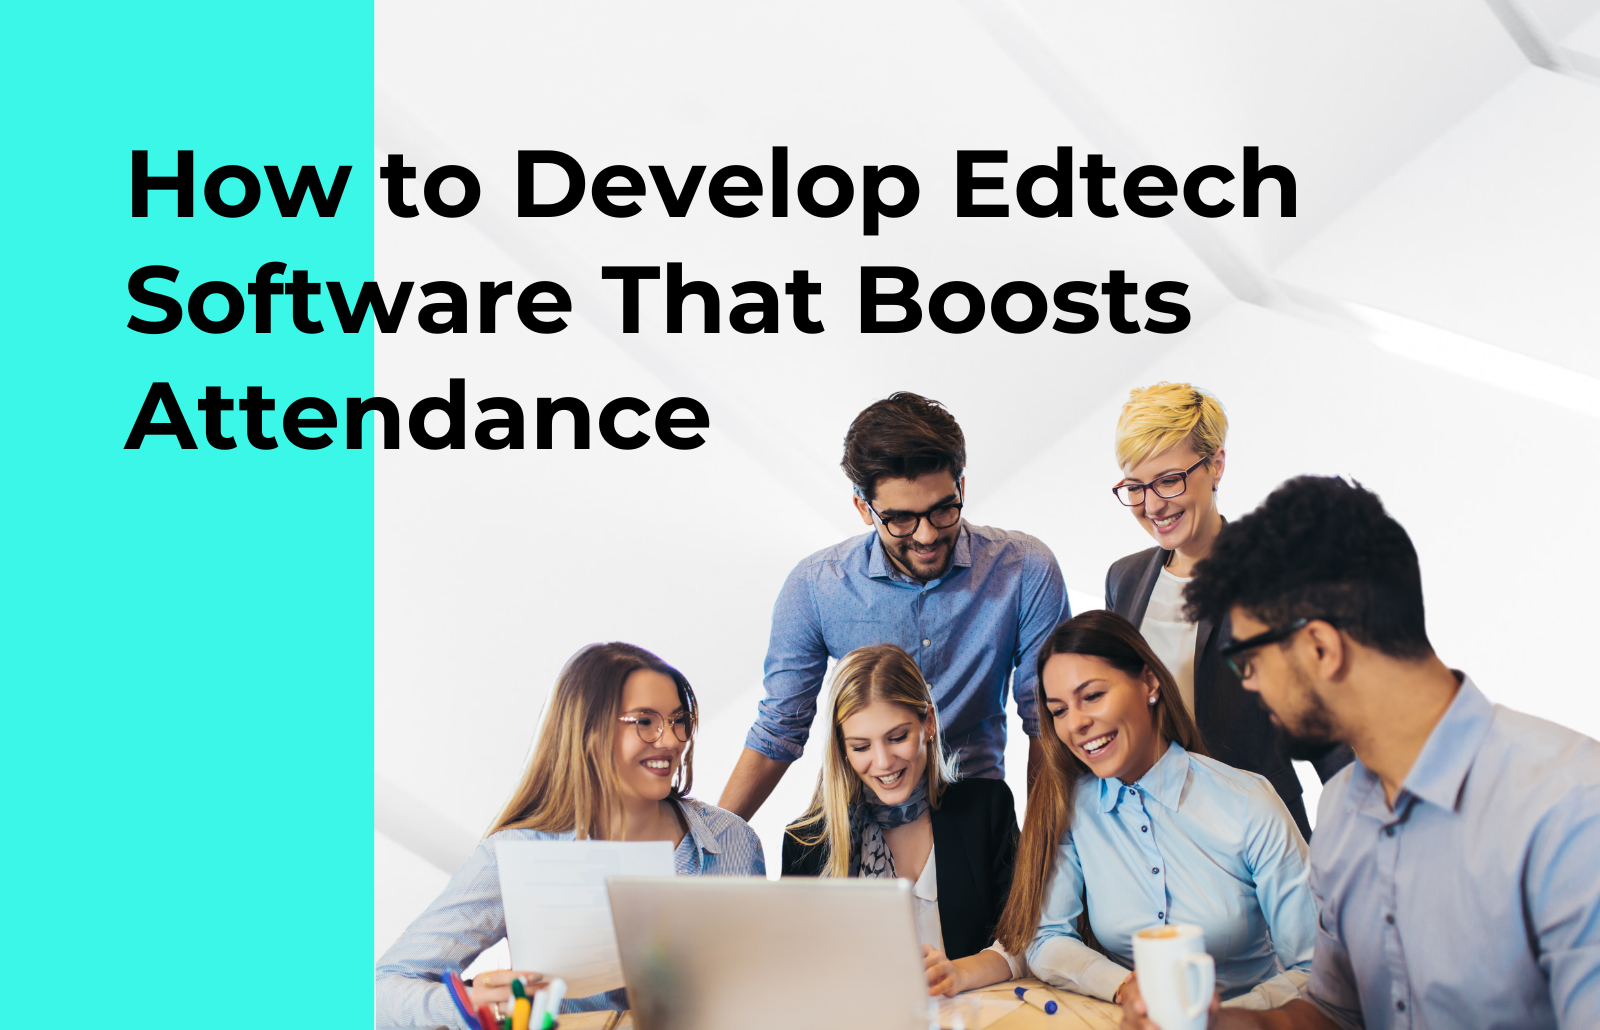 edtech software development